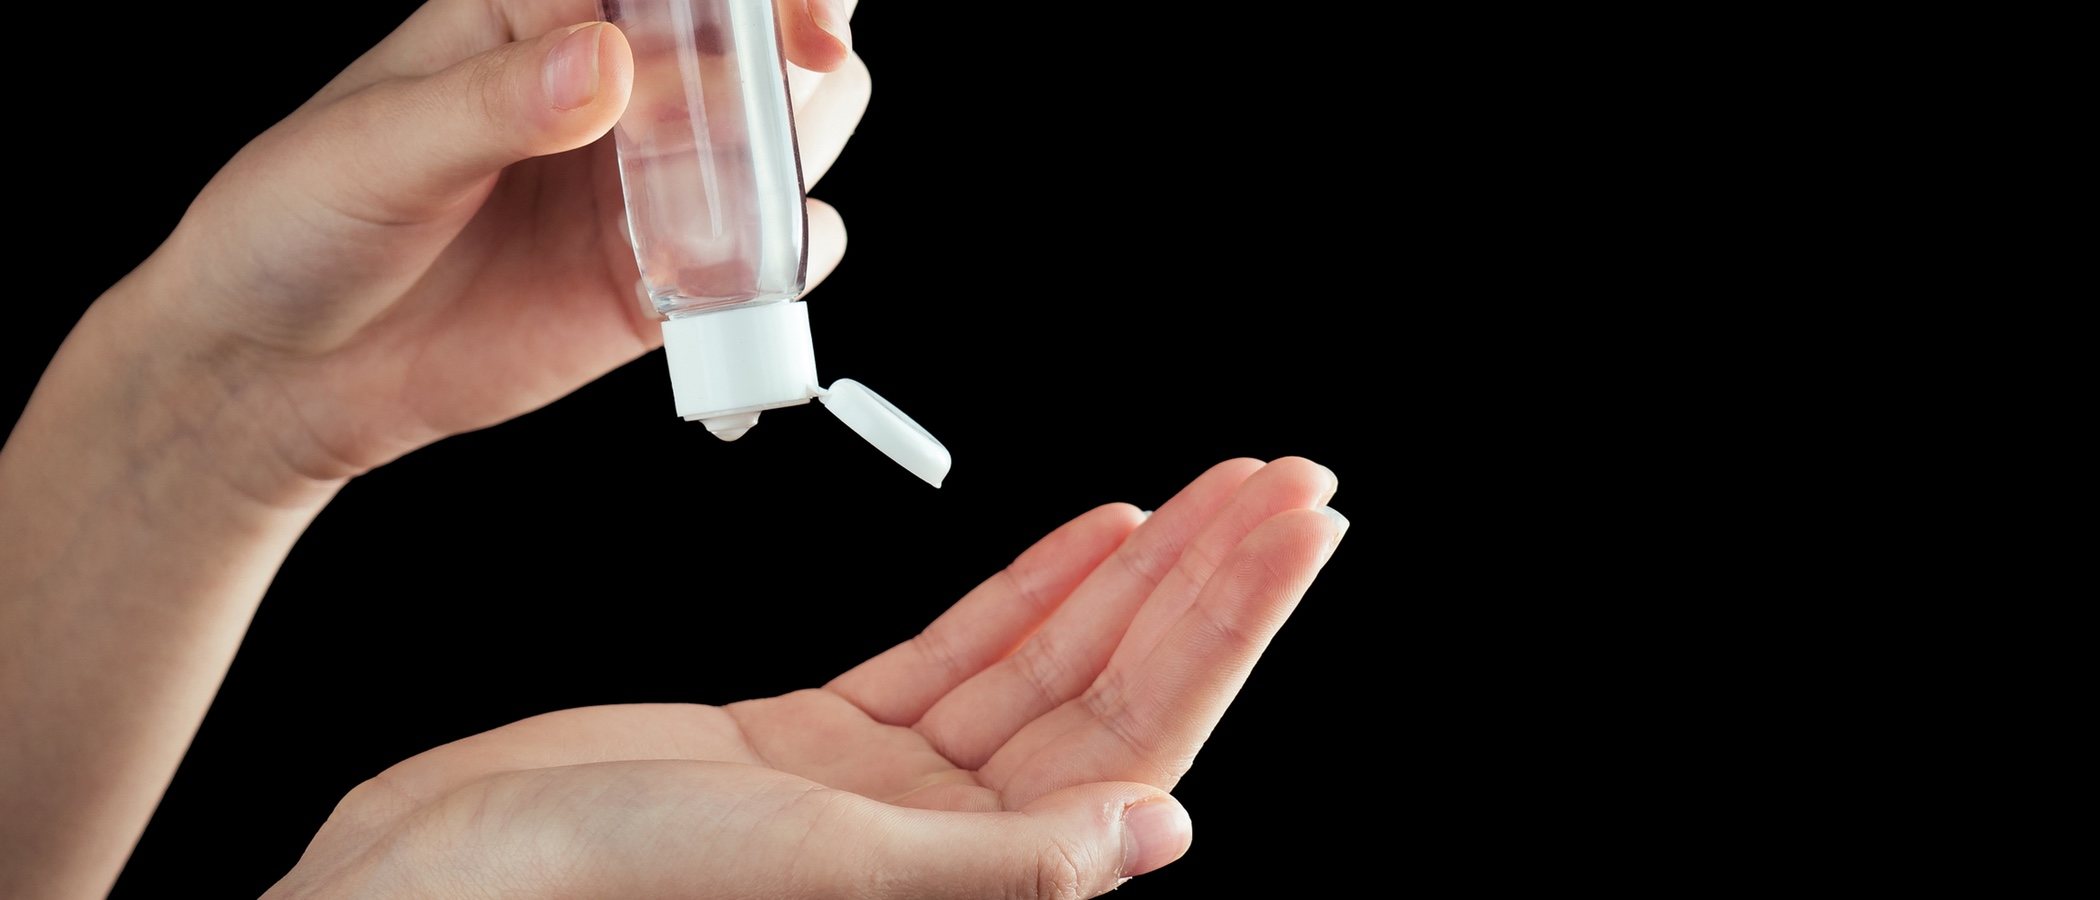 L'Oréal contra el CoVid19: fabrica gel desinfectante y flexibiliza los pagos de las empresas